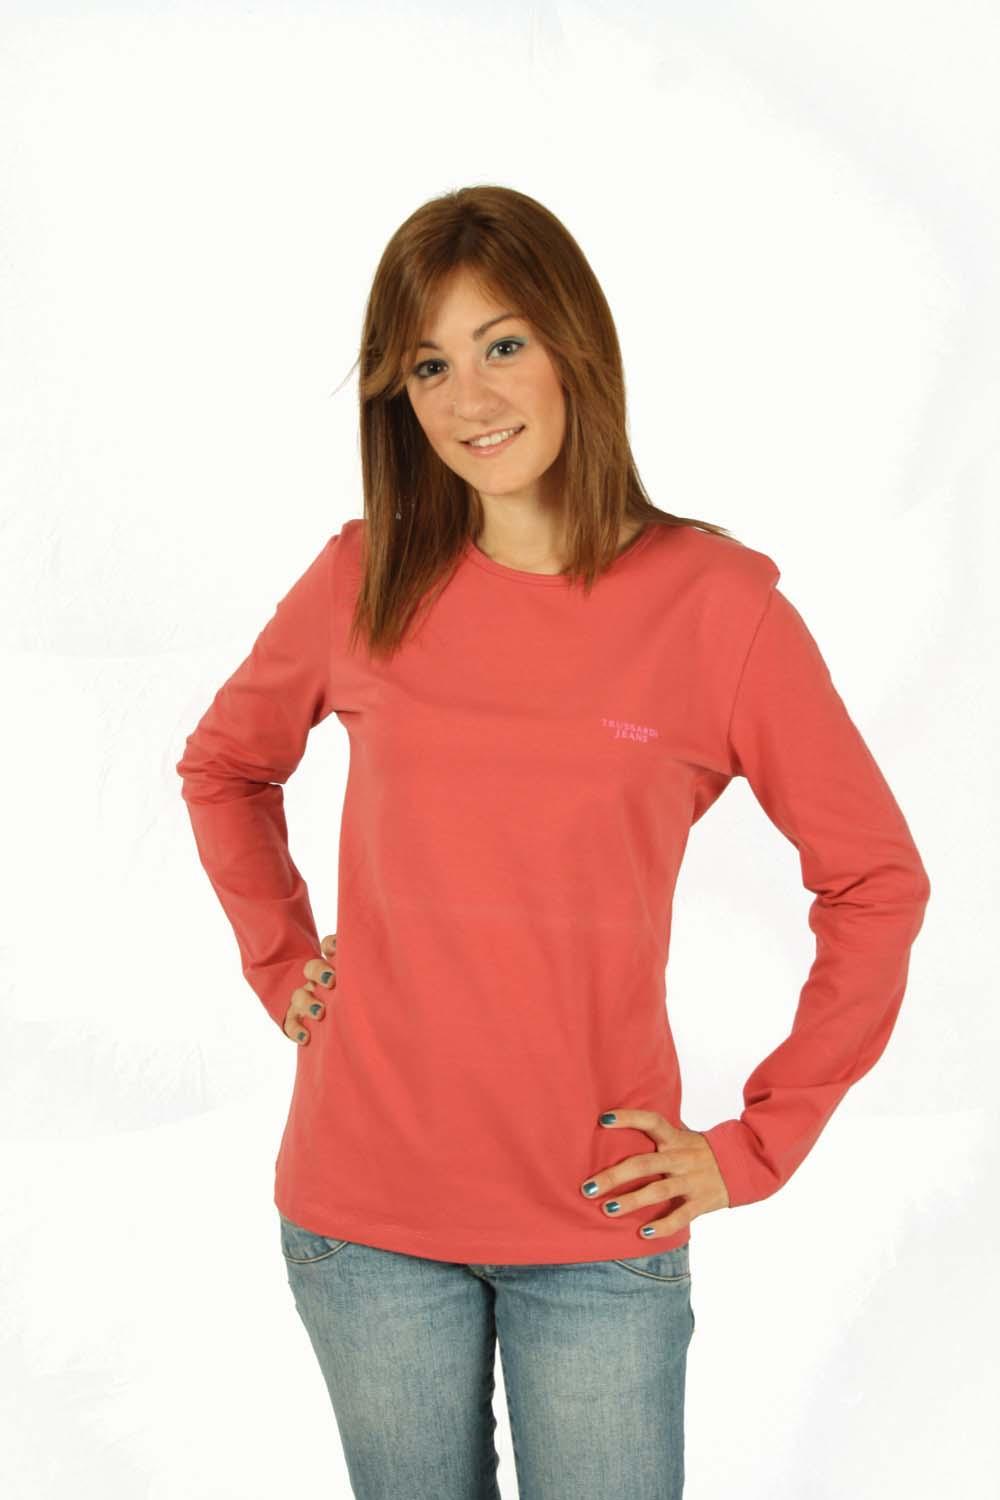 Foto TRUSSARDI camiseta color salmón trussardi Camisetas Mujer foto 875233